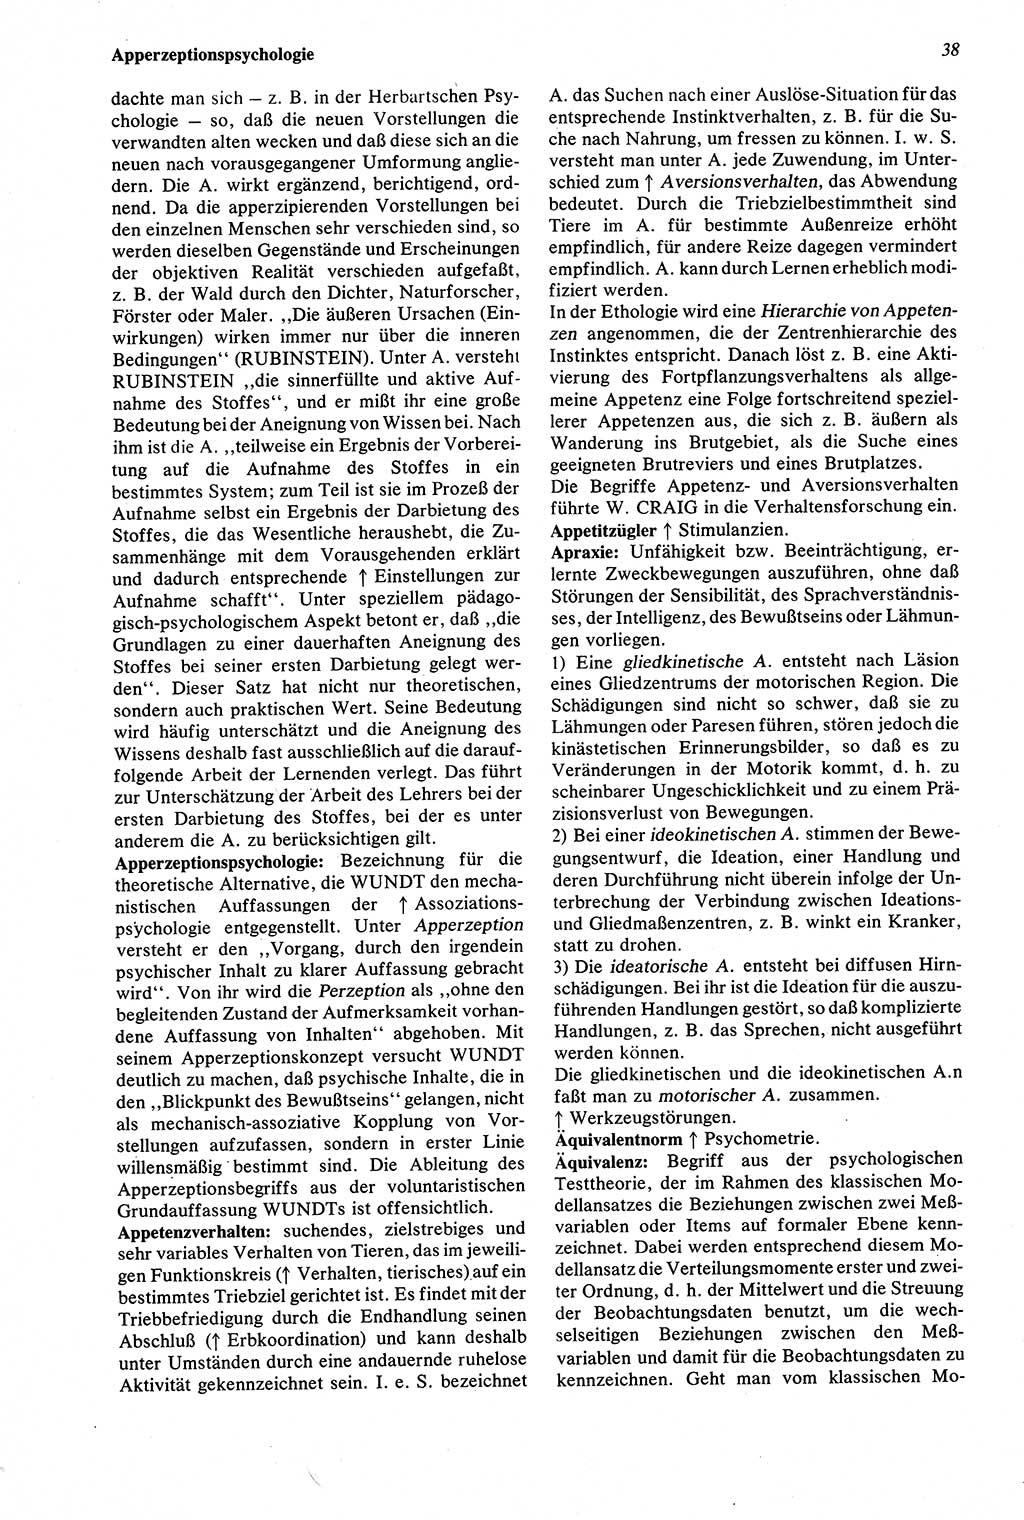 Wörterbuch der Psychologie [Deutsche Demokratische Republik (DDR)] 1976, Seite 38 (Wb. Psych. DDR 1976, S. 38)